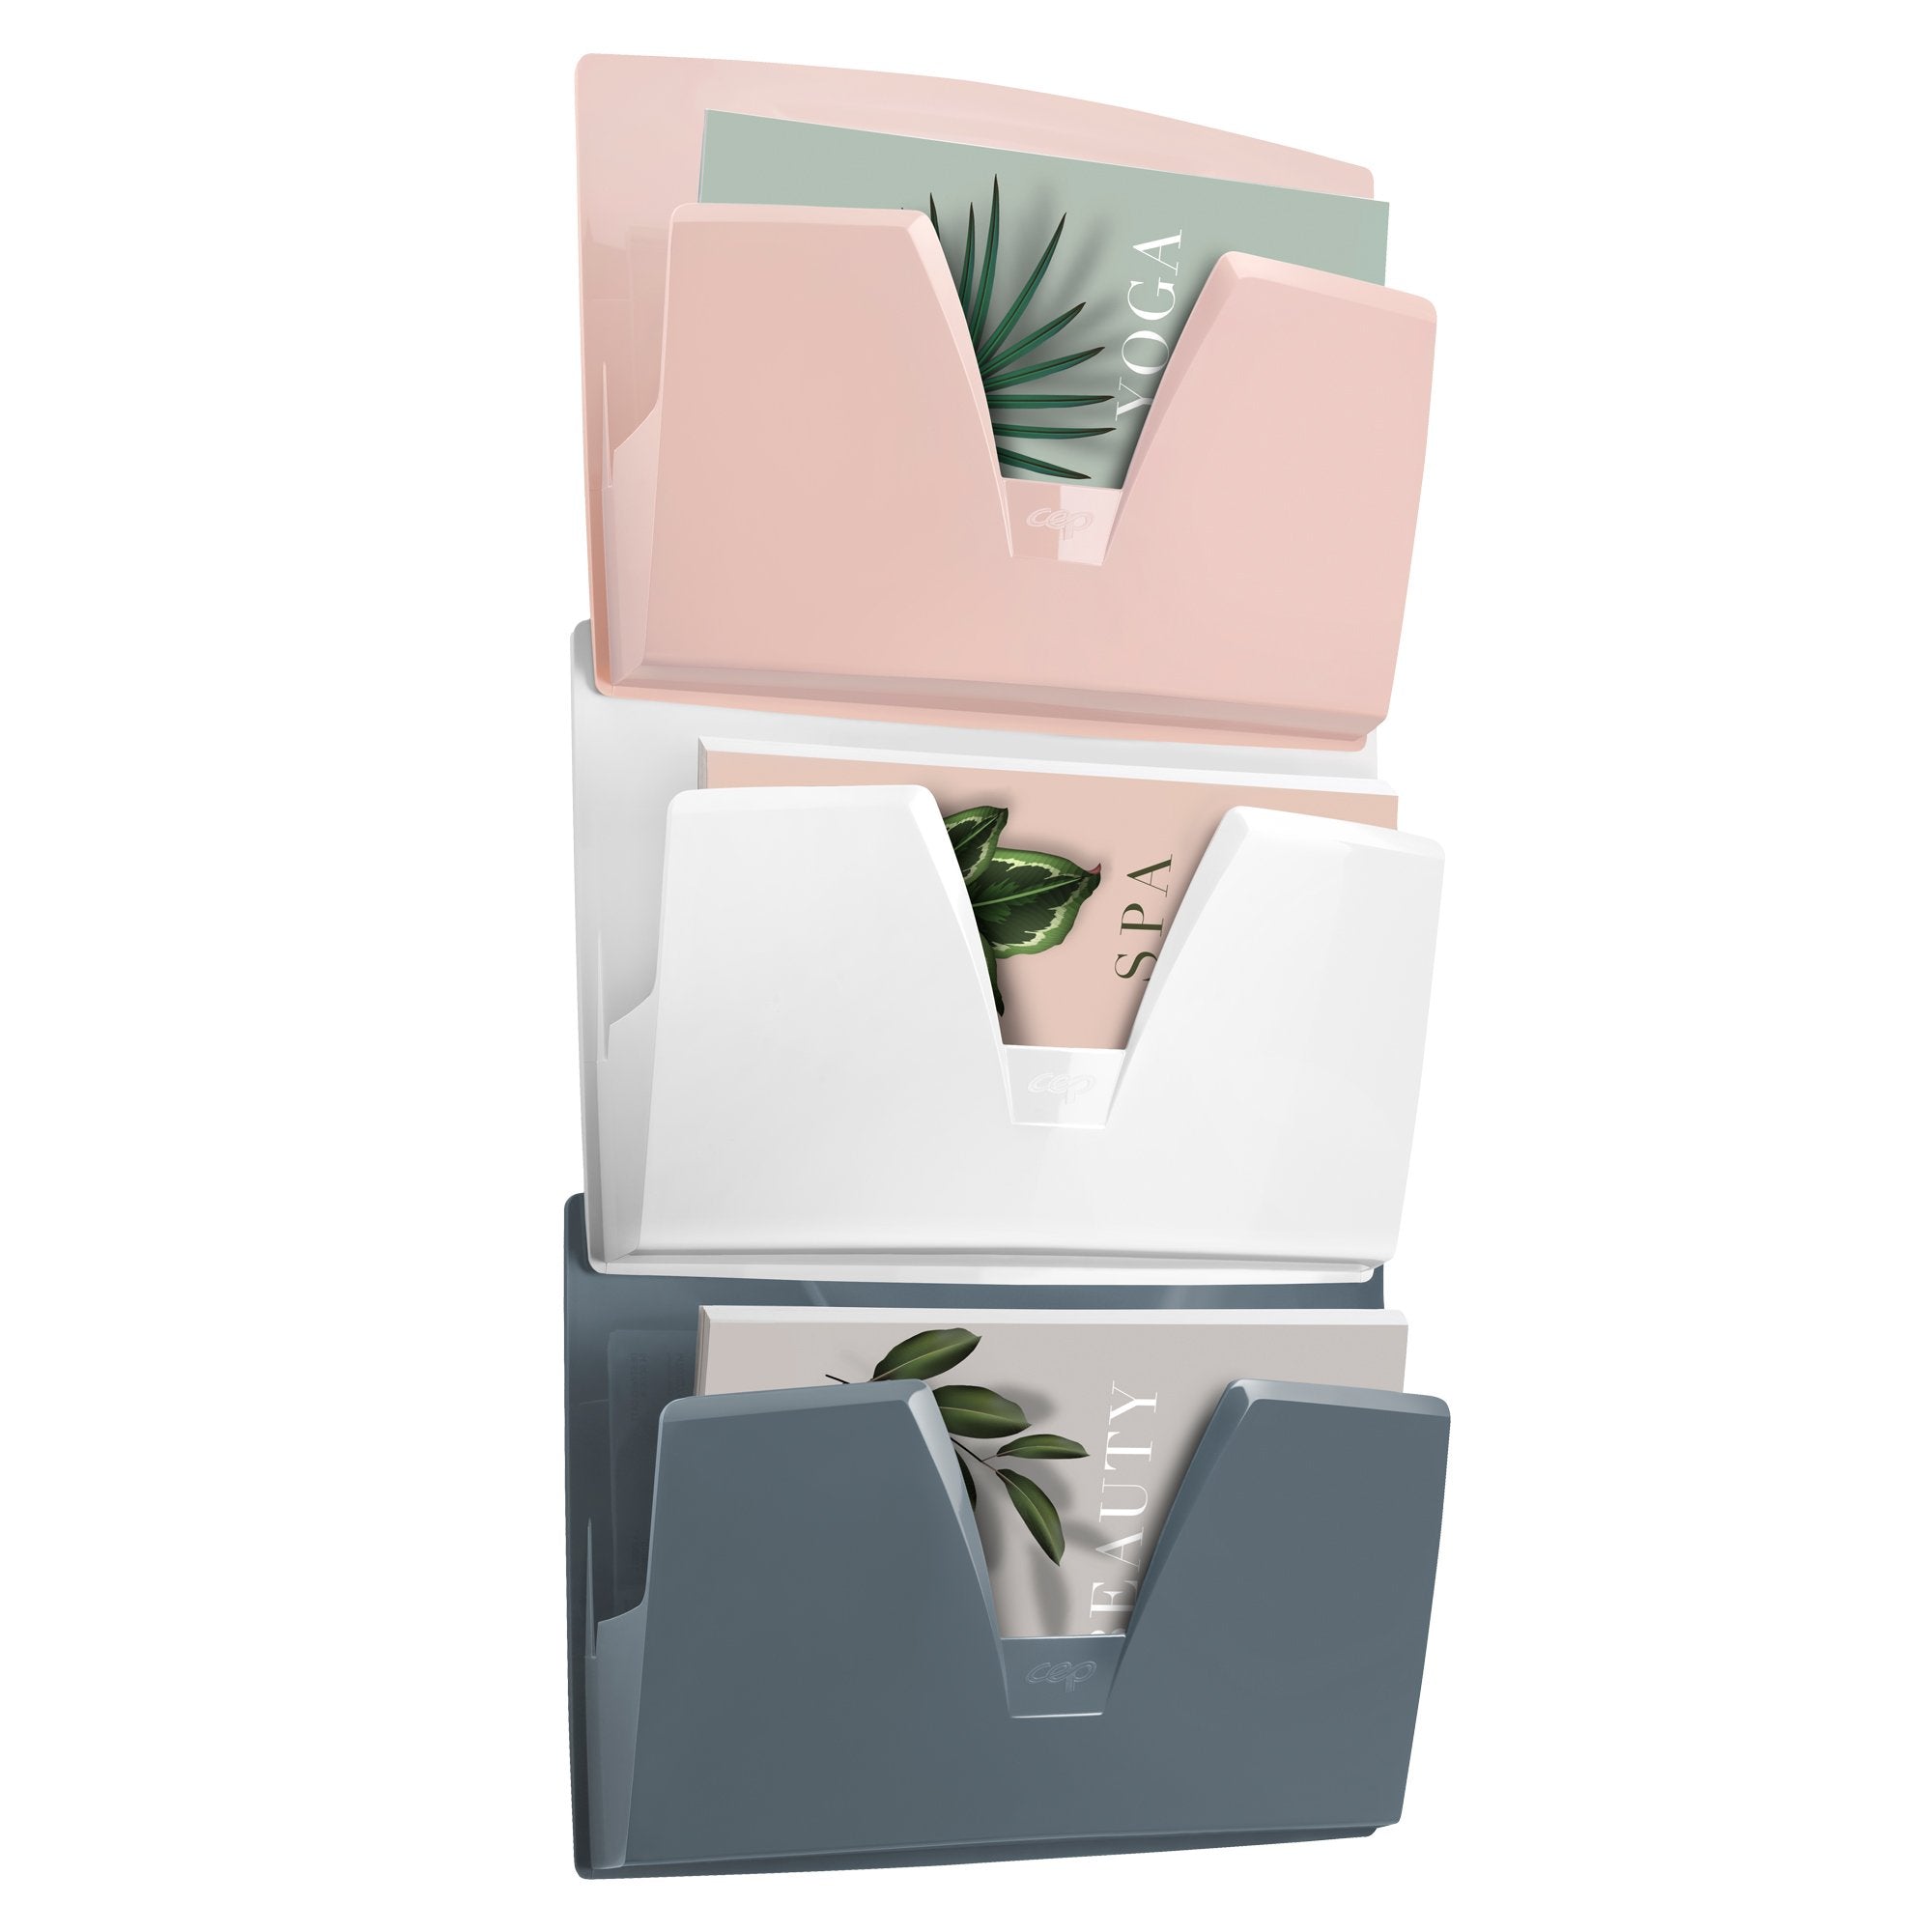 cep-portadocumenti-parete-3-scomparti-rosa-grigio-bianco-170-min-mineral